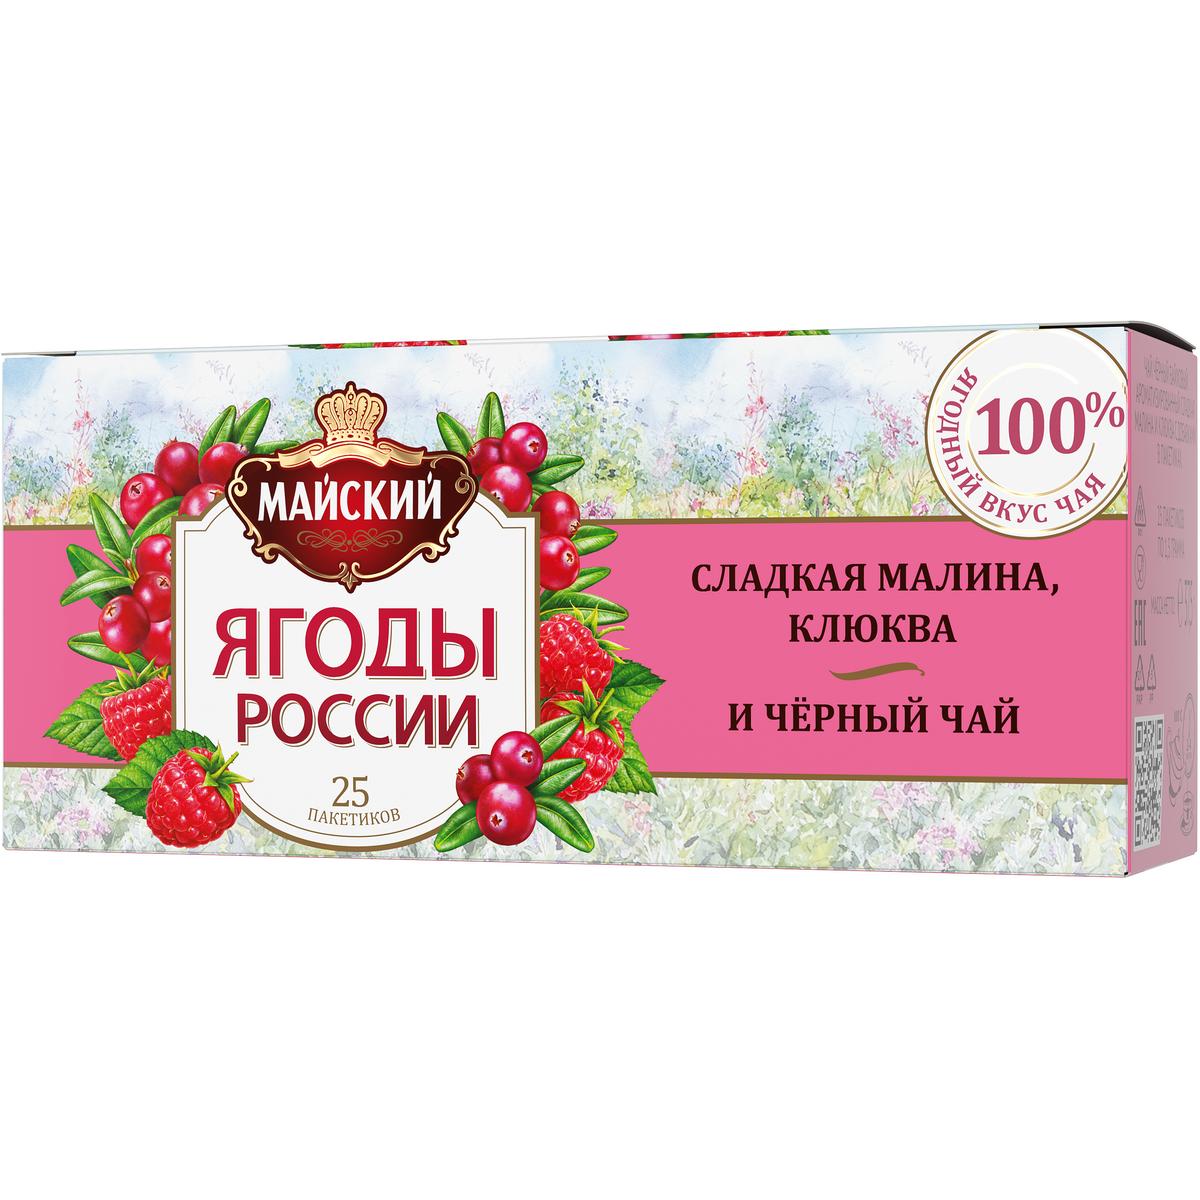 Чай черный Майский Ягоды России | Сладкая малина и клюква, с добавками, 25 пакетиков